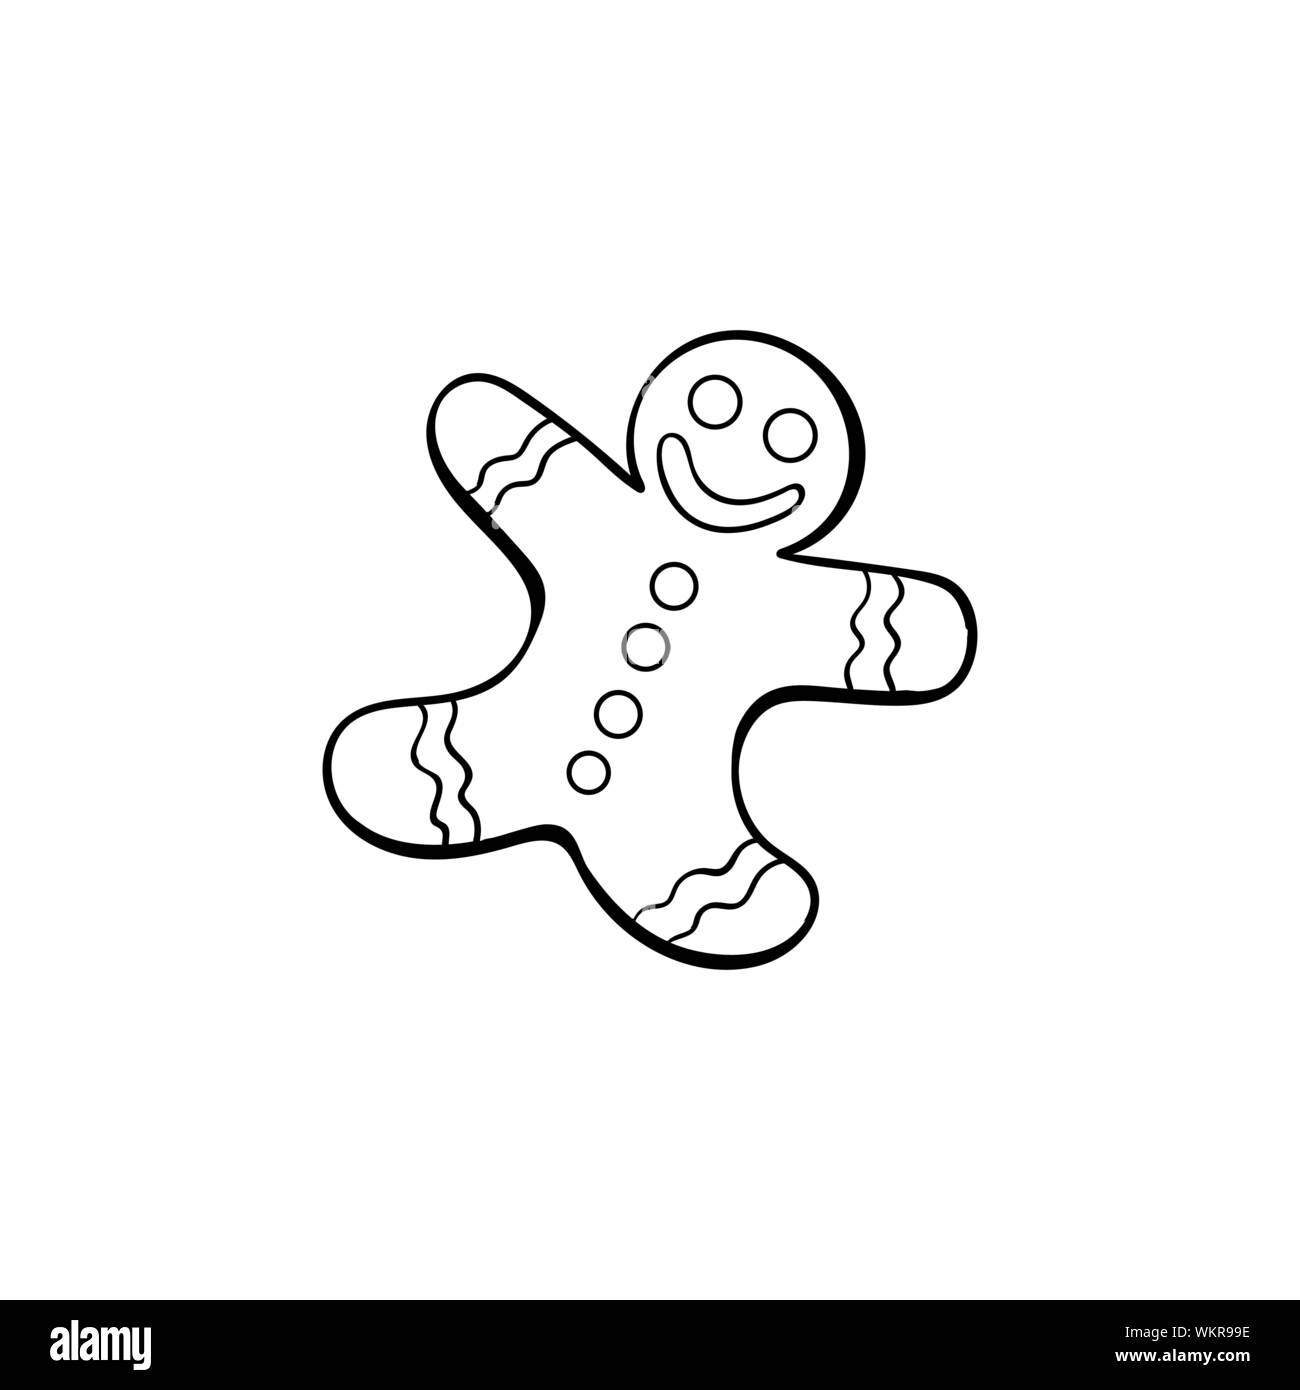 Gingerbread Man hand drawn vector illustration. Les délicieux biscuits sourire en forme de photo de coloriage. Snack traditionnel fait maison, biscuit de noël silhouette. De délicieuses pâtisseries, produits de boulangerie Illustration de Vecteur